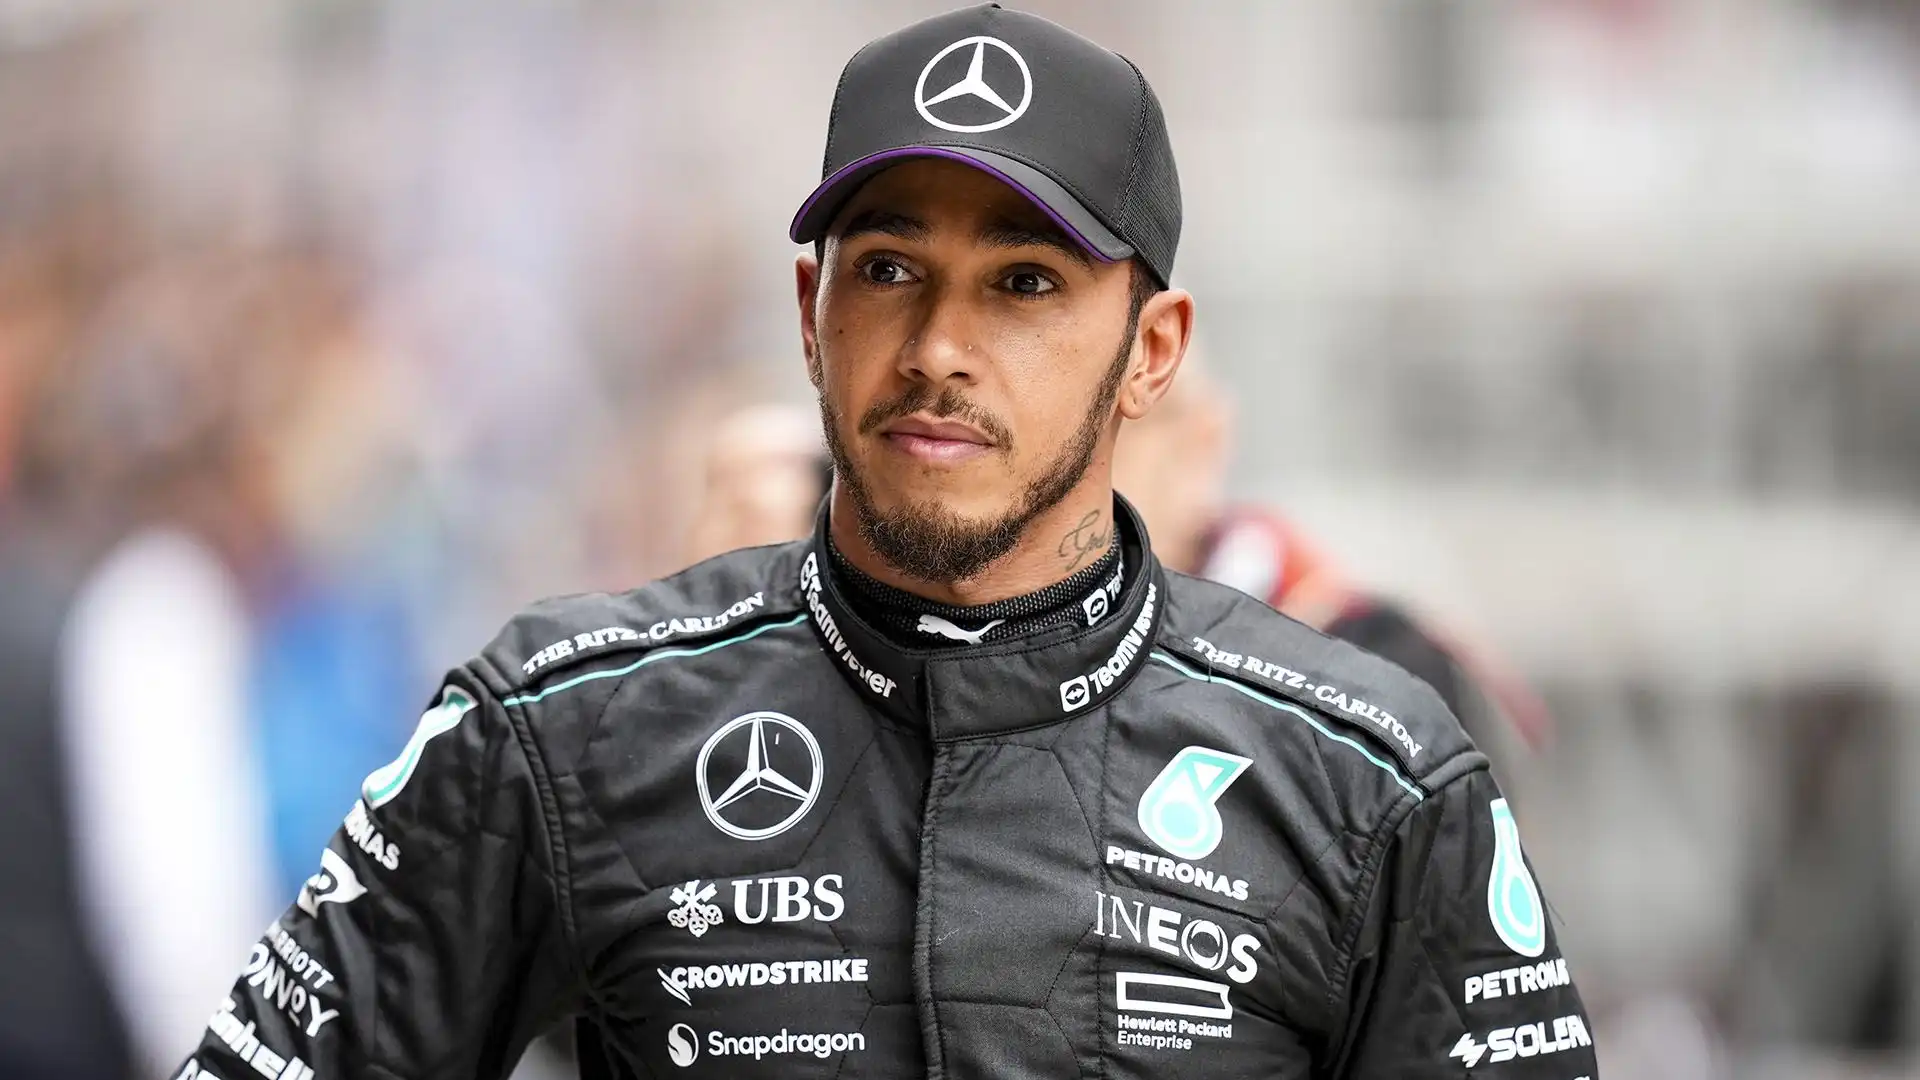 "Per me non è solo la guida e lo stare in pista, ma anche tutto l’approccio che Lewis ha alle gare. Vale tantissimo e sono sicuro che questo aiuterà tutta la Ferrari"